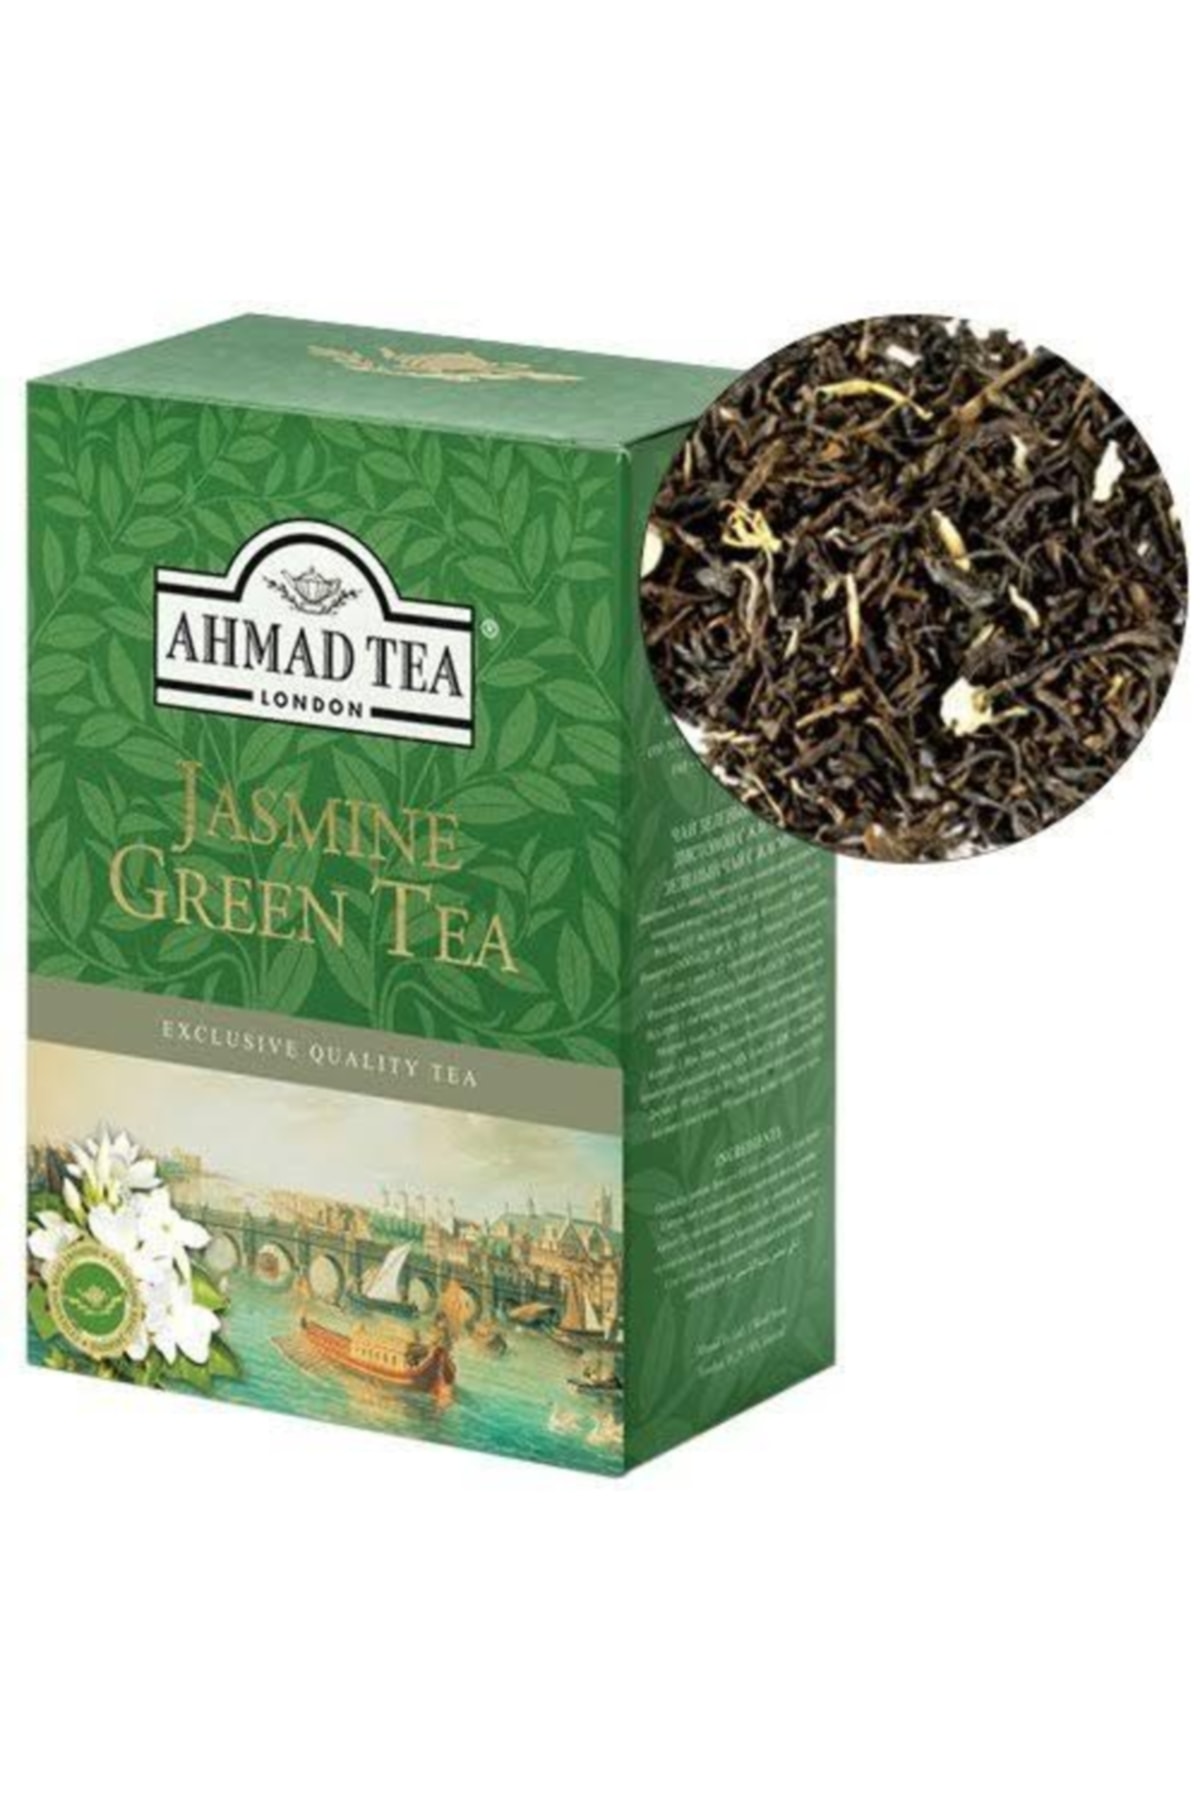 Ahmad Tea Jasmine Green Tea - Yaseminli Yeşil Çay 100 gram Dökme